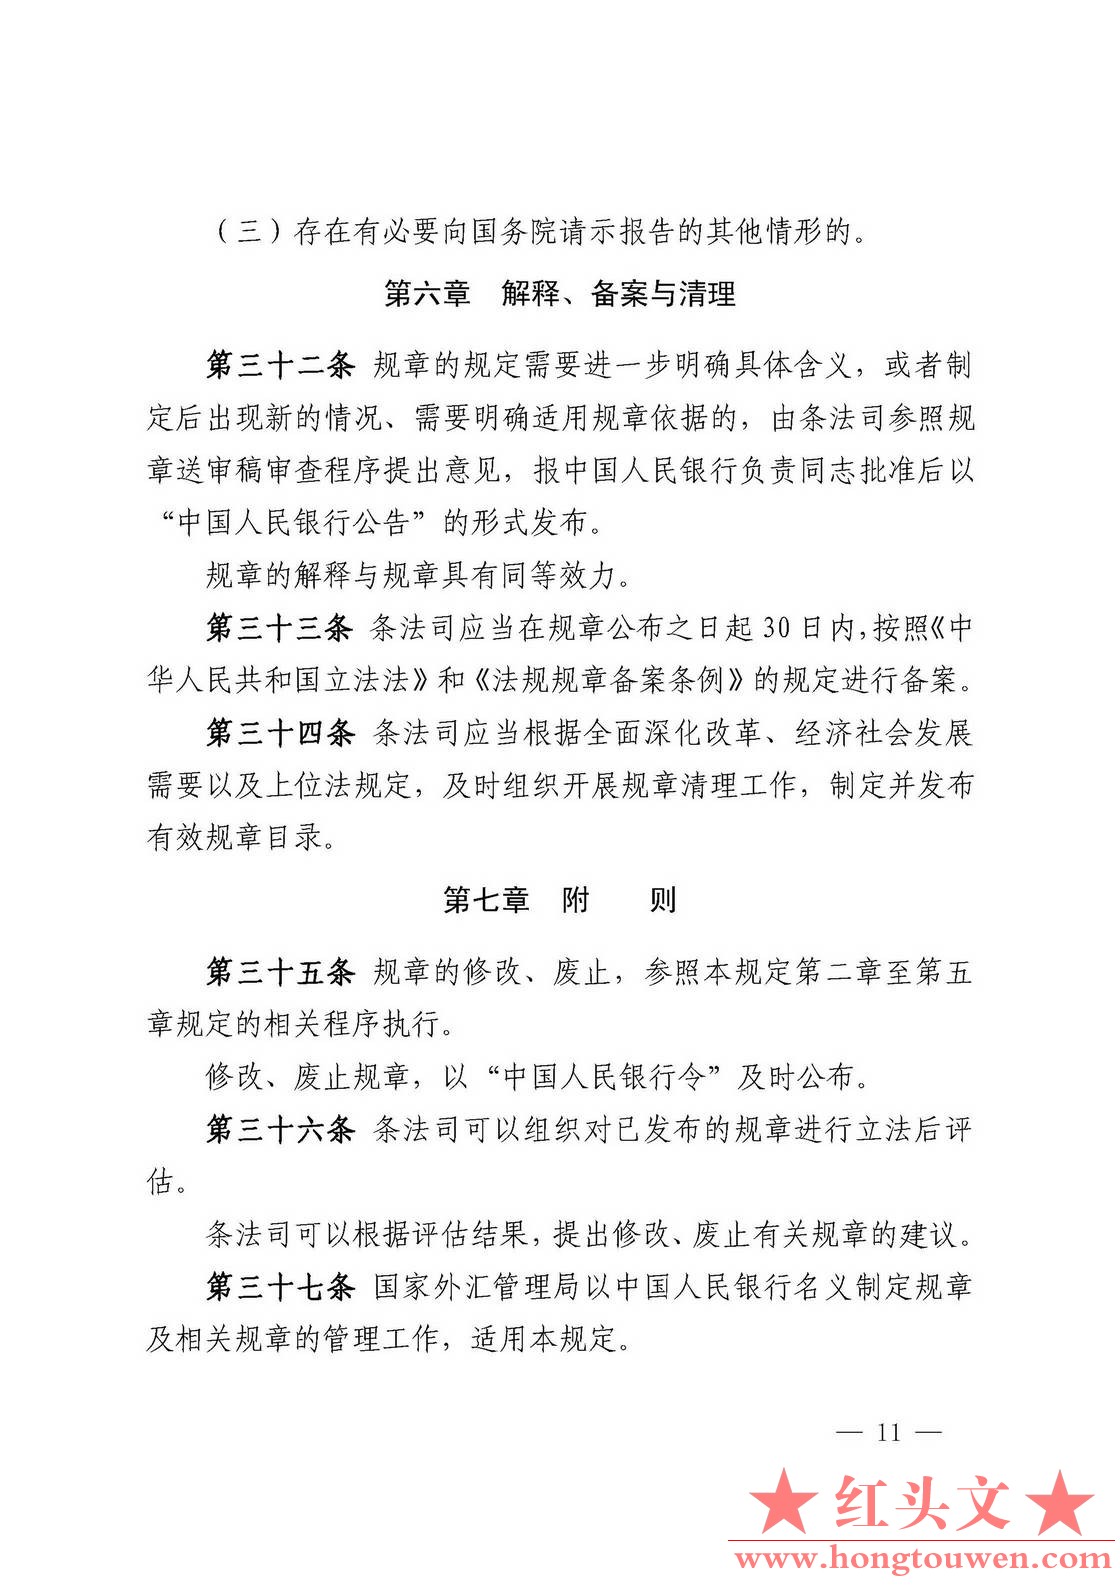 中国人民银行令[2018]3号-中国人民银行规章制定程序与管理规定_页面_11.jpg.jpg